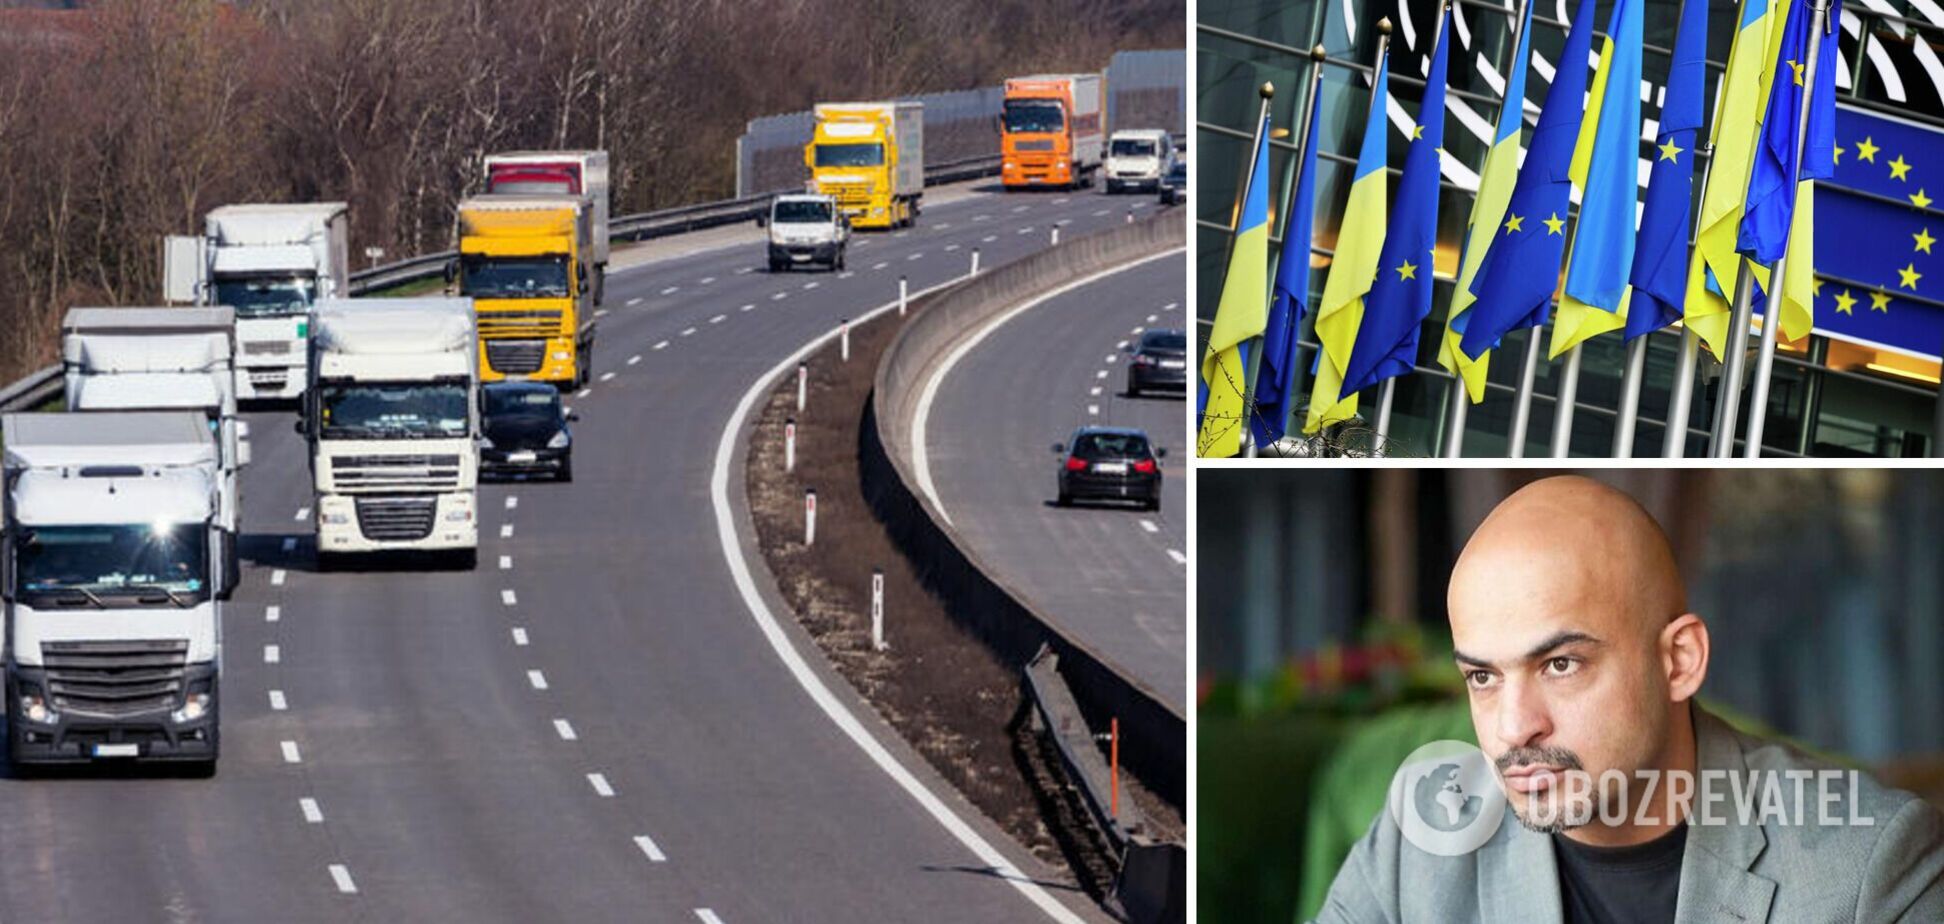 Найєм повідомив, що Україна отримає 'транспортний безвіз' із країнами ЄС 29 червня